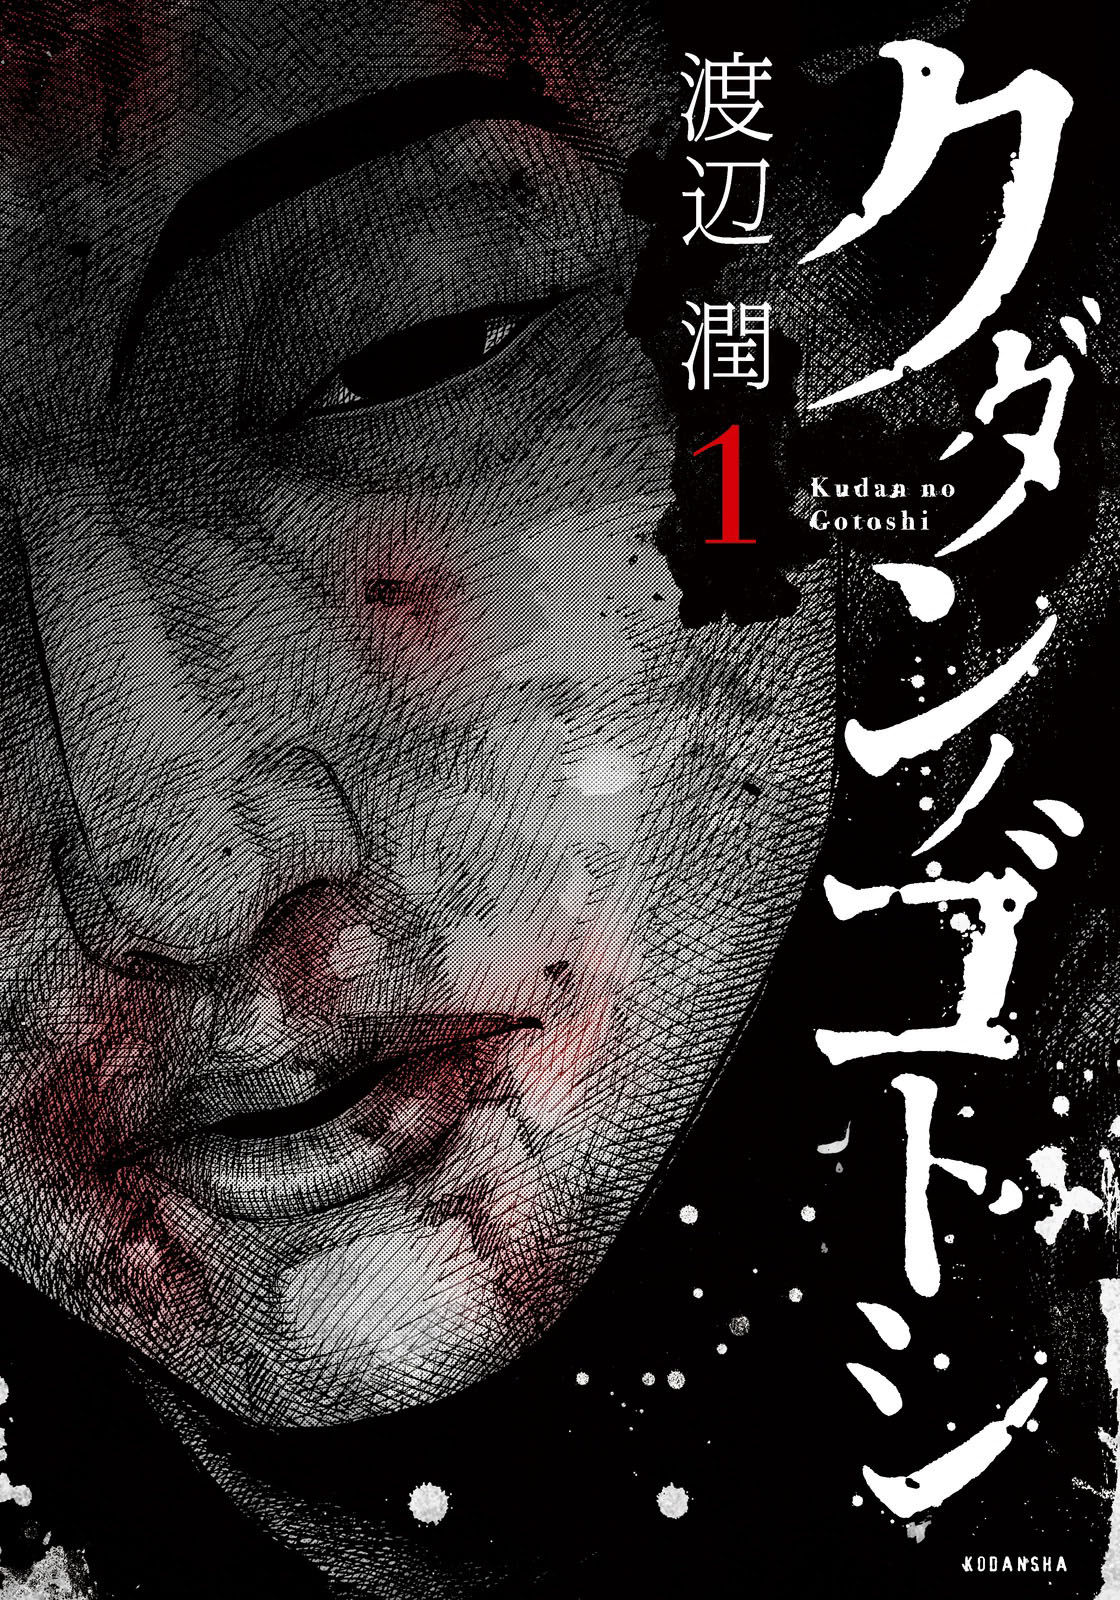 Kudan no Gotoshi Vol. 1 Ch. 2 Shiraishi Tatsumi < Part 1 >